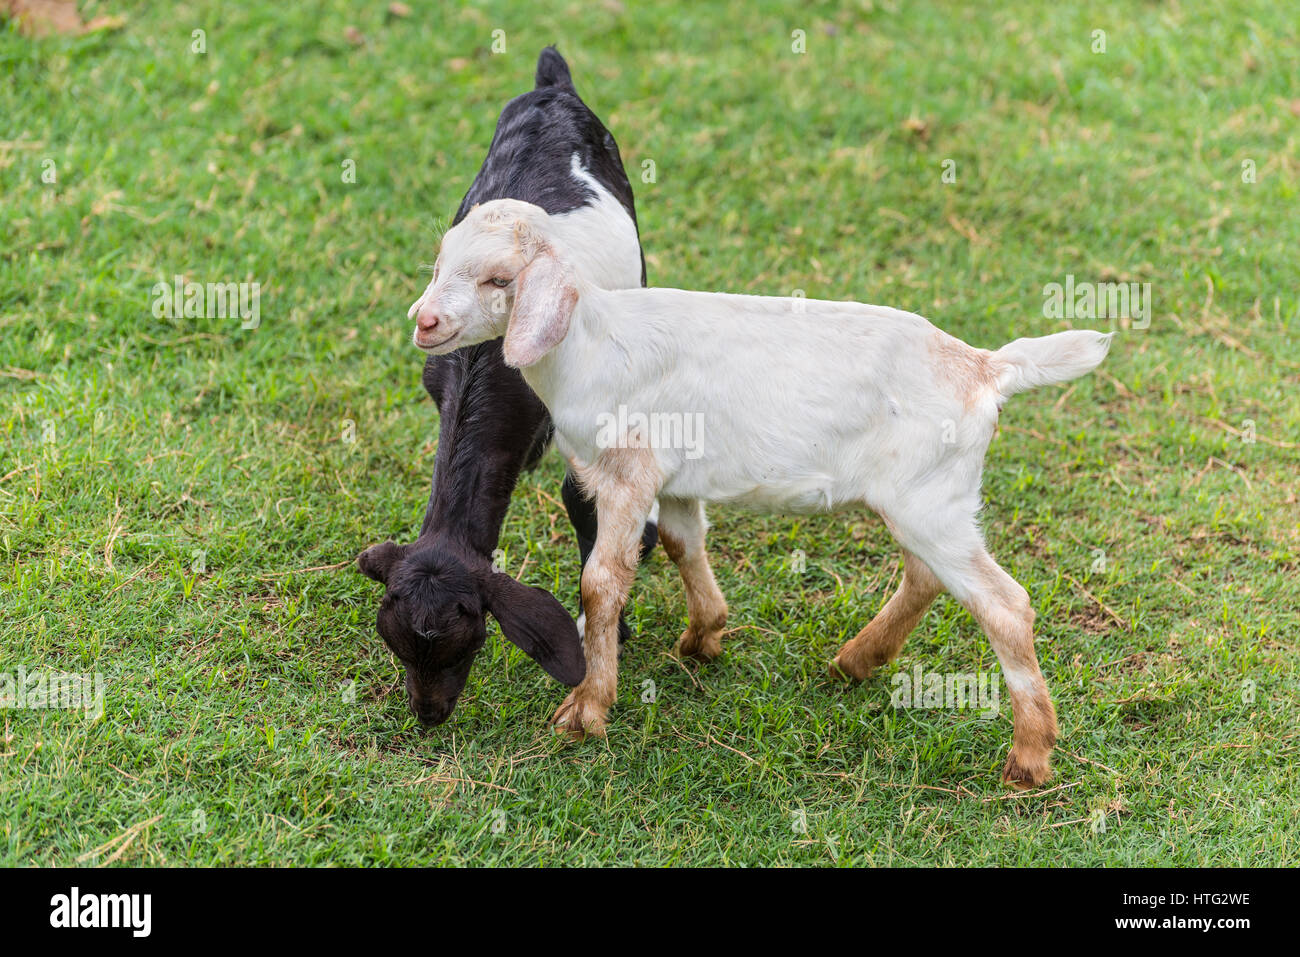 Zwei lustige junge schwarze und weiße Ziegen auf einem grünen Rasen Stockfoto